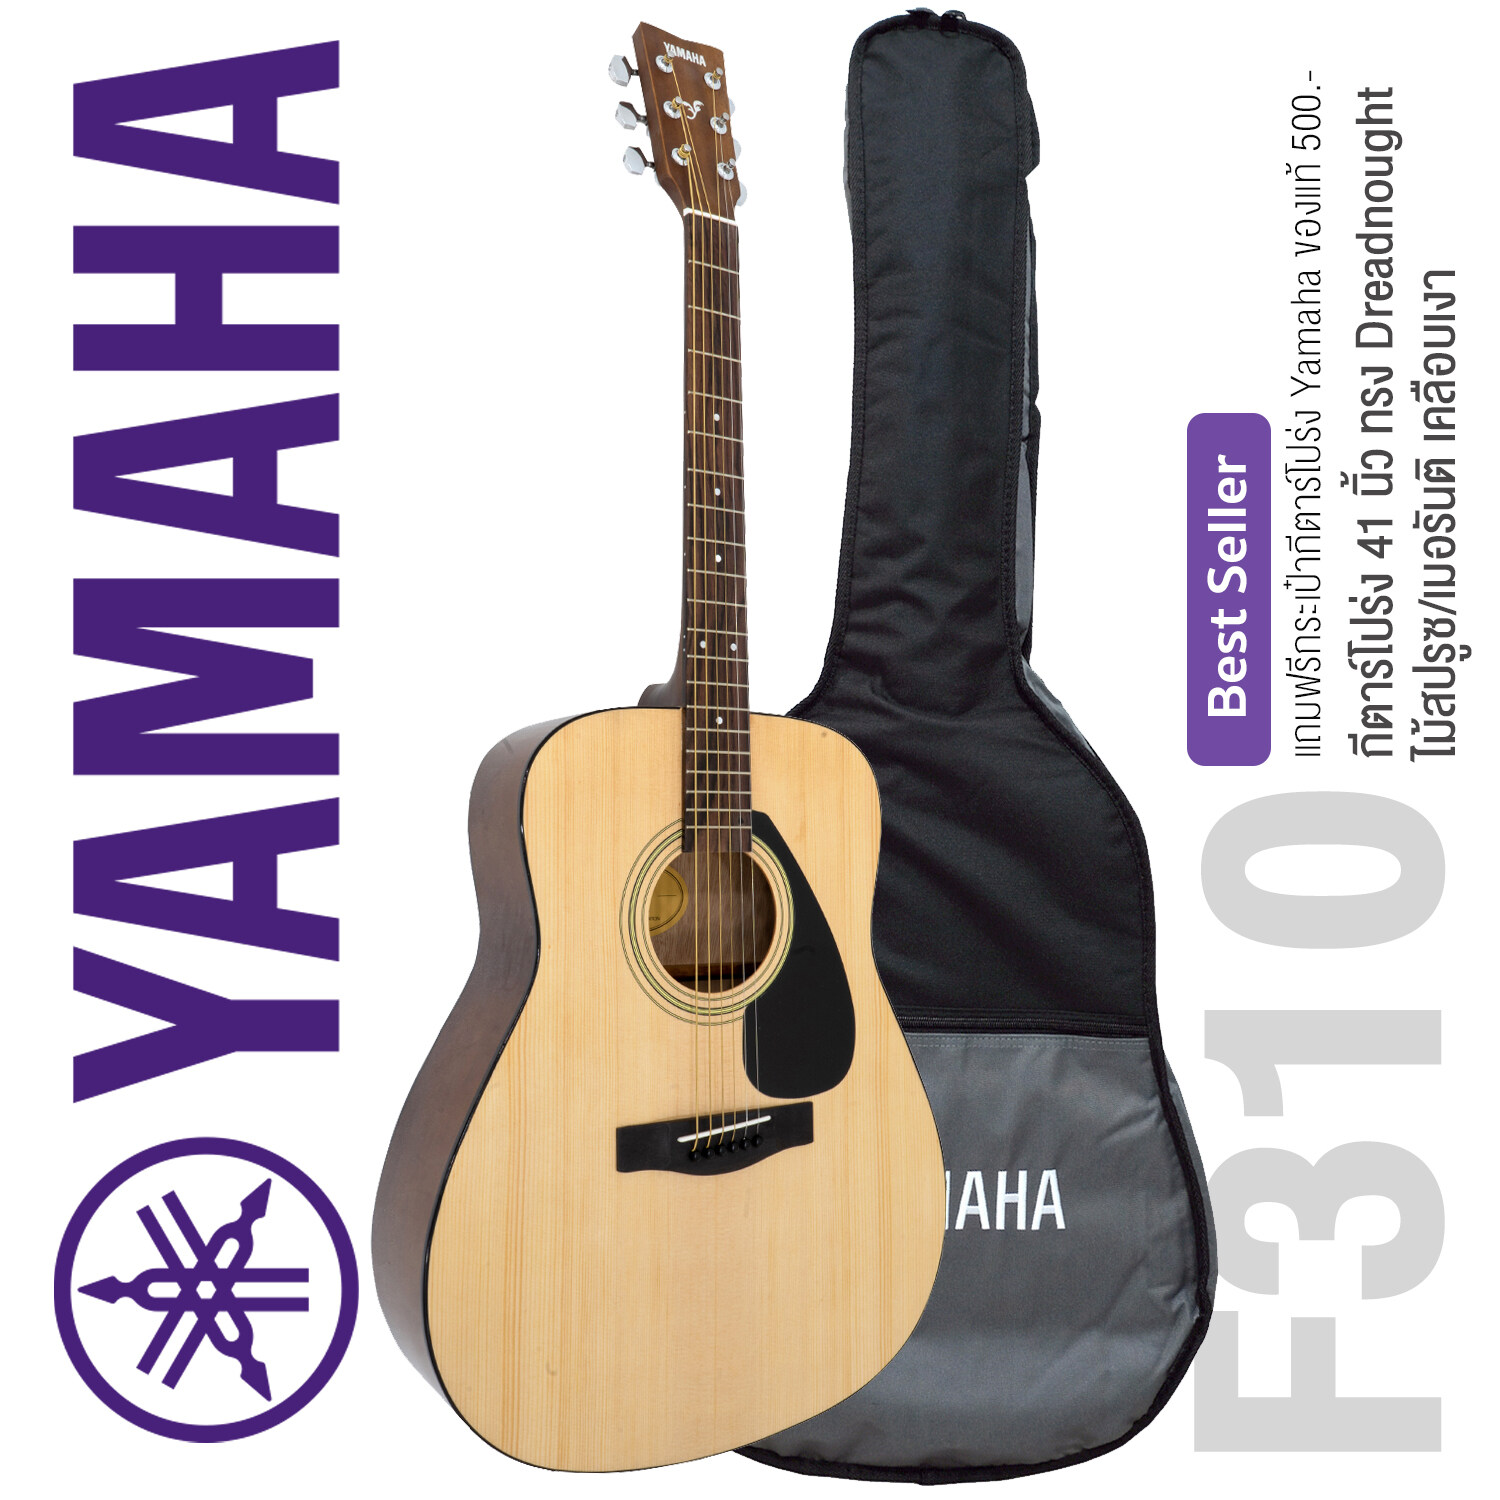 Yamaha® กีตาร์โปร่ง 41 นิ้ว รุ่น F310 (สีไม้) + แถมฟรีกระเป๋ากีตาร์ Yamaha & เครื่องตั้งสาย & คาโป้ & ปีิ๊กกีตาร์ & คู่มือกีตาร์โปร่ง Yamaha ** กีตาร์โปร่งมือใหม่แบรนด์เนมที่ขายดีที่สุด **